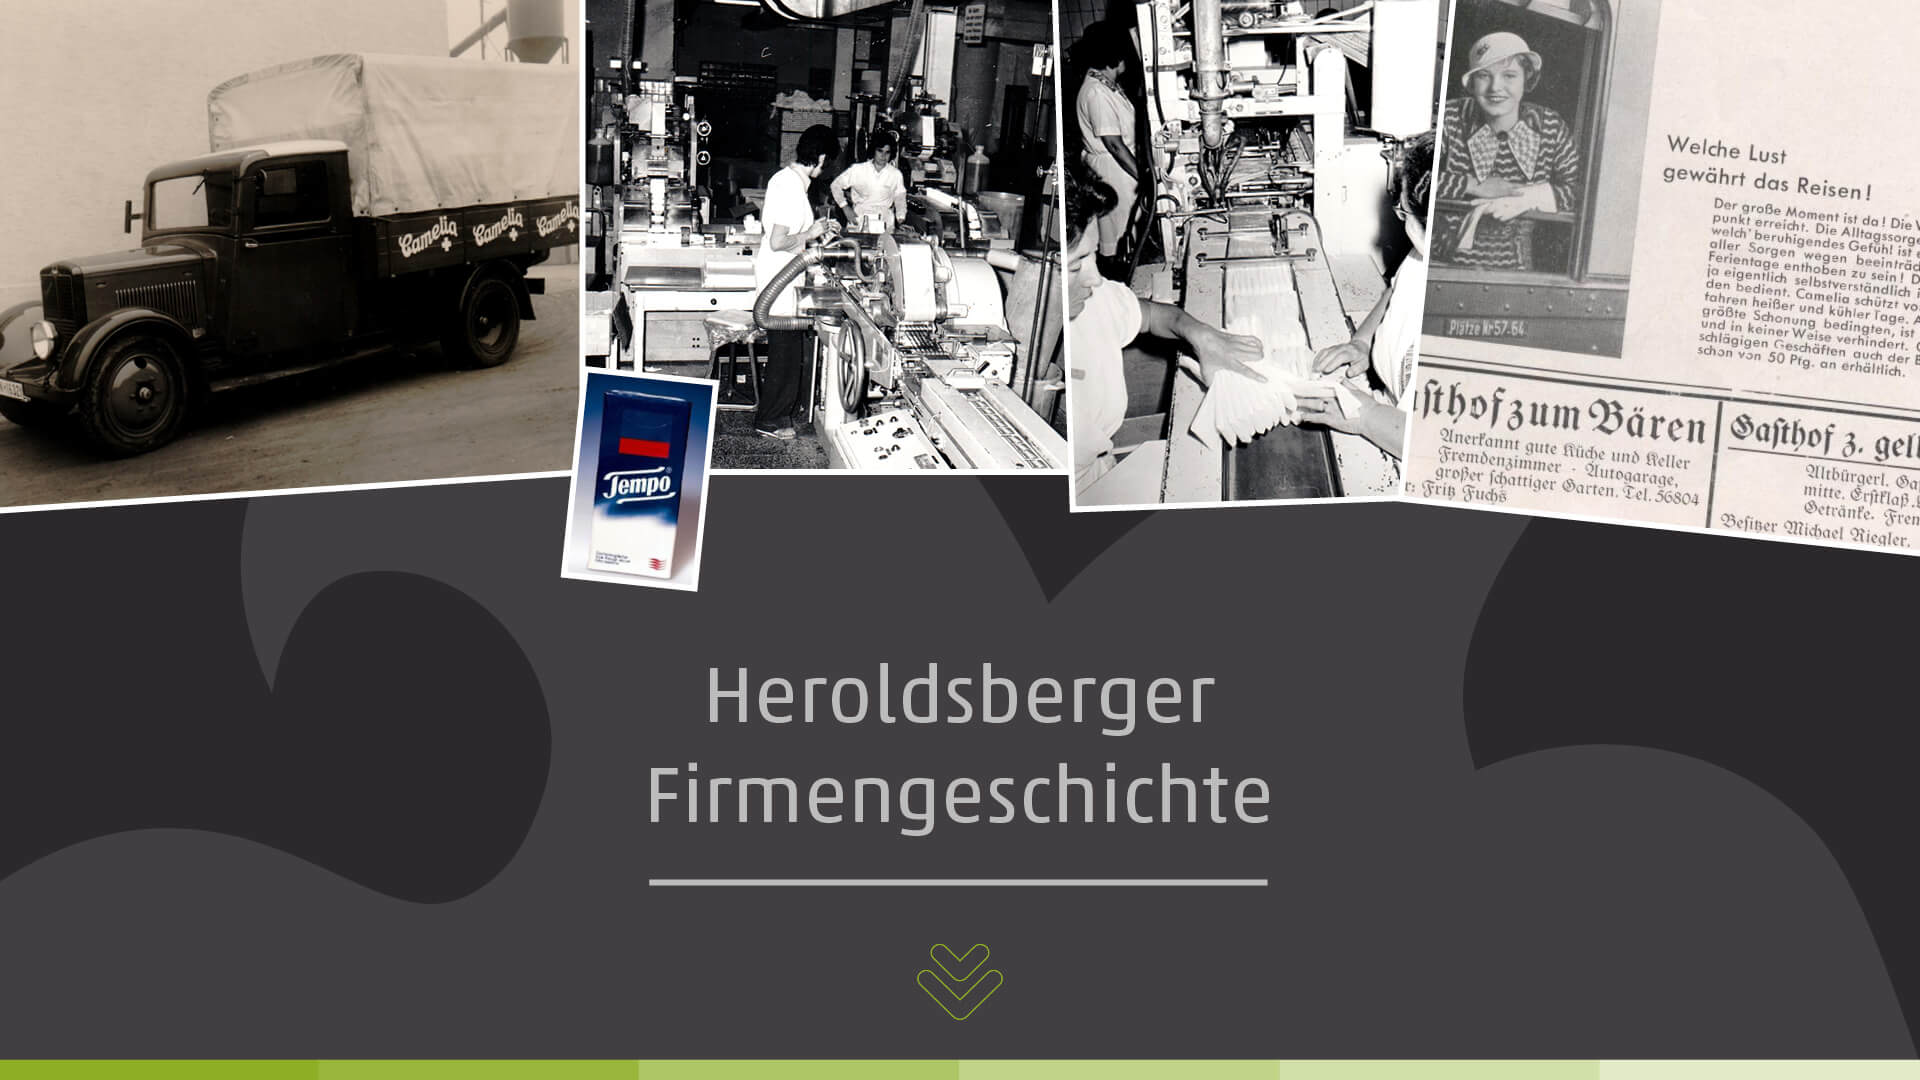 Heroldsberger Firmengeschichte - Vereinigte Papierwerke